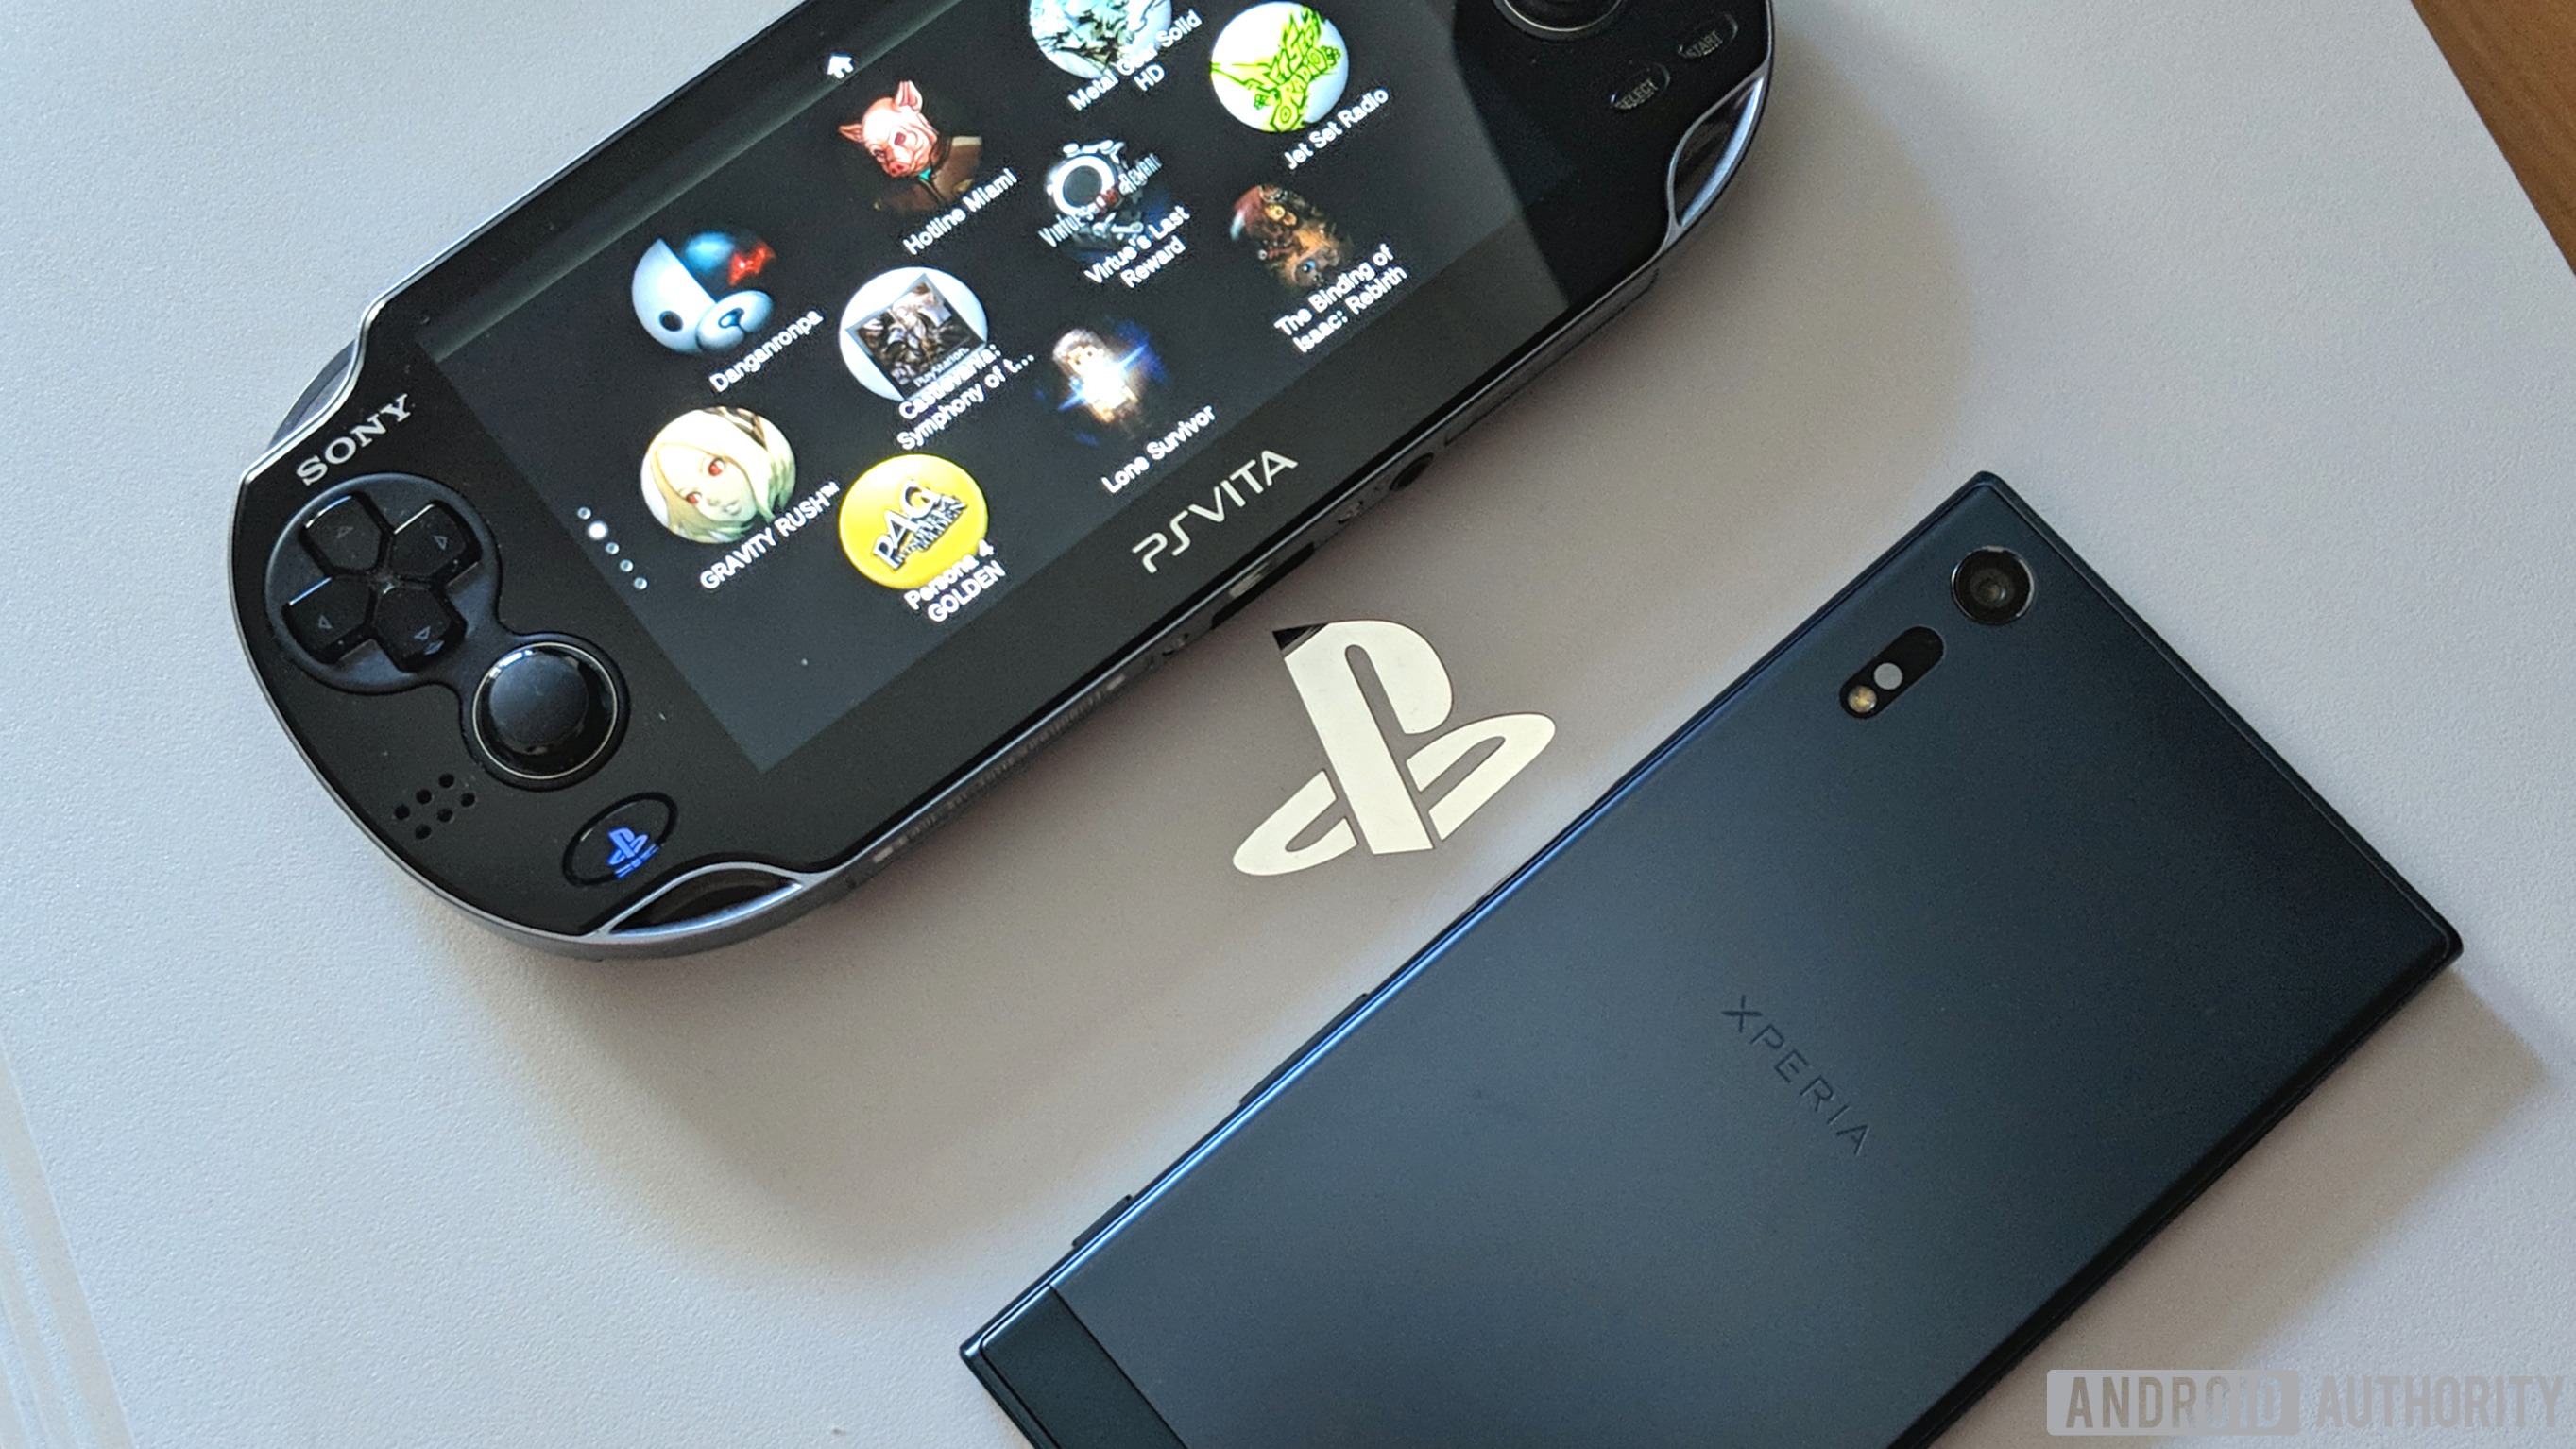 Sony PS Vita PS4 Sony Xperia智能手机